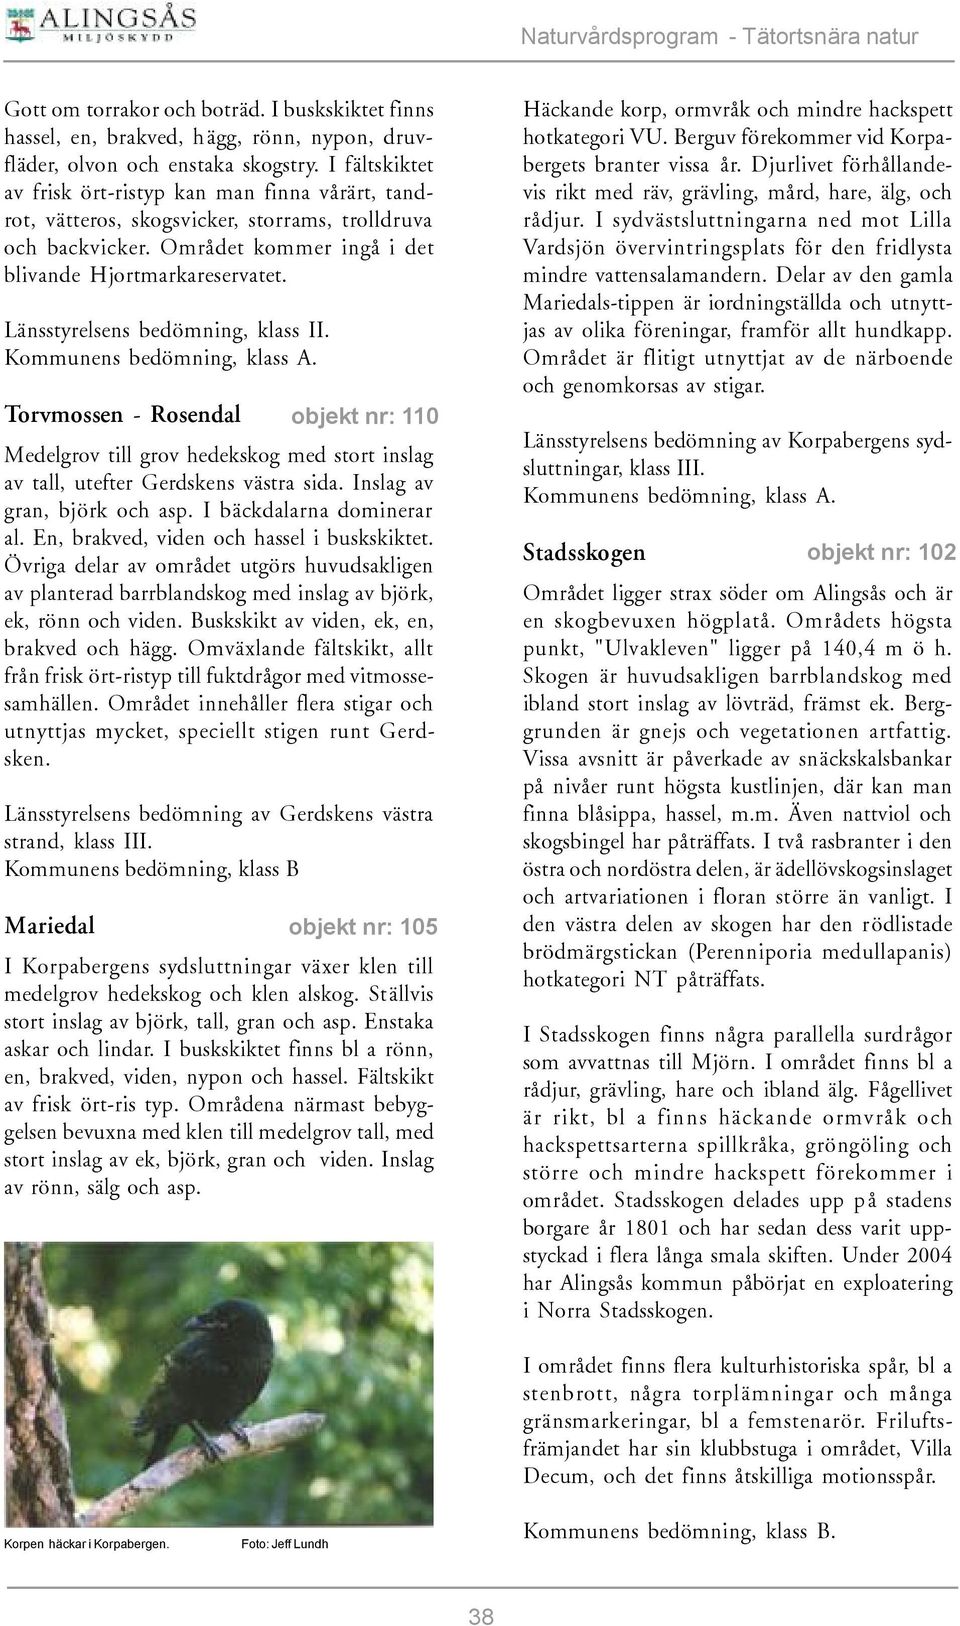 Torvmossen - Rosendal Medelgrov till grov hedekskog med stort inslag av tall, utefter Gerdskens västra sida. Inslag av gran, björk och asp. I bäckdalarna dominerar al.